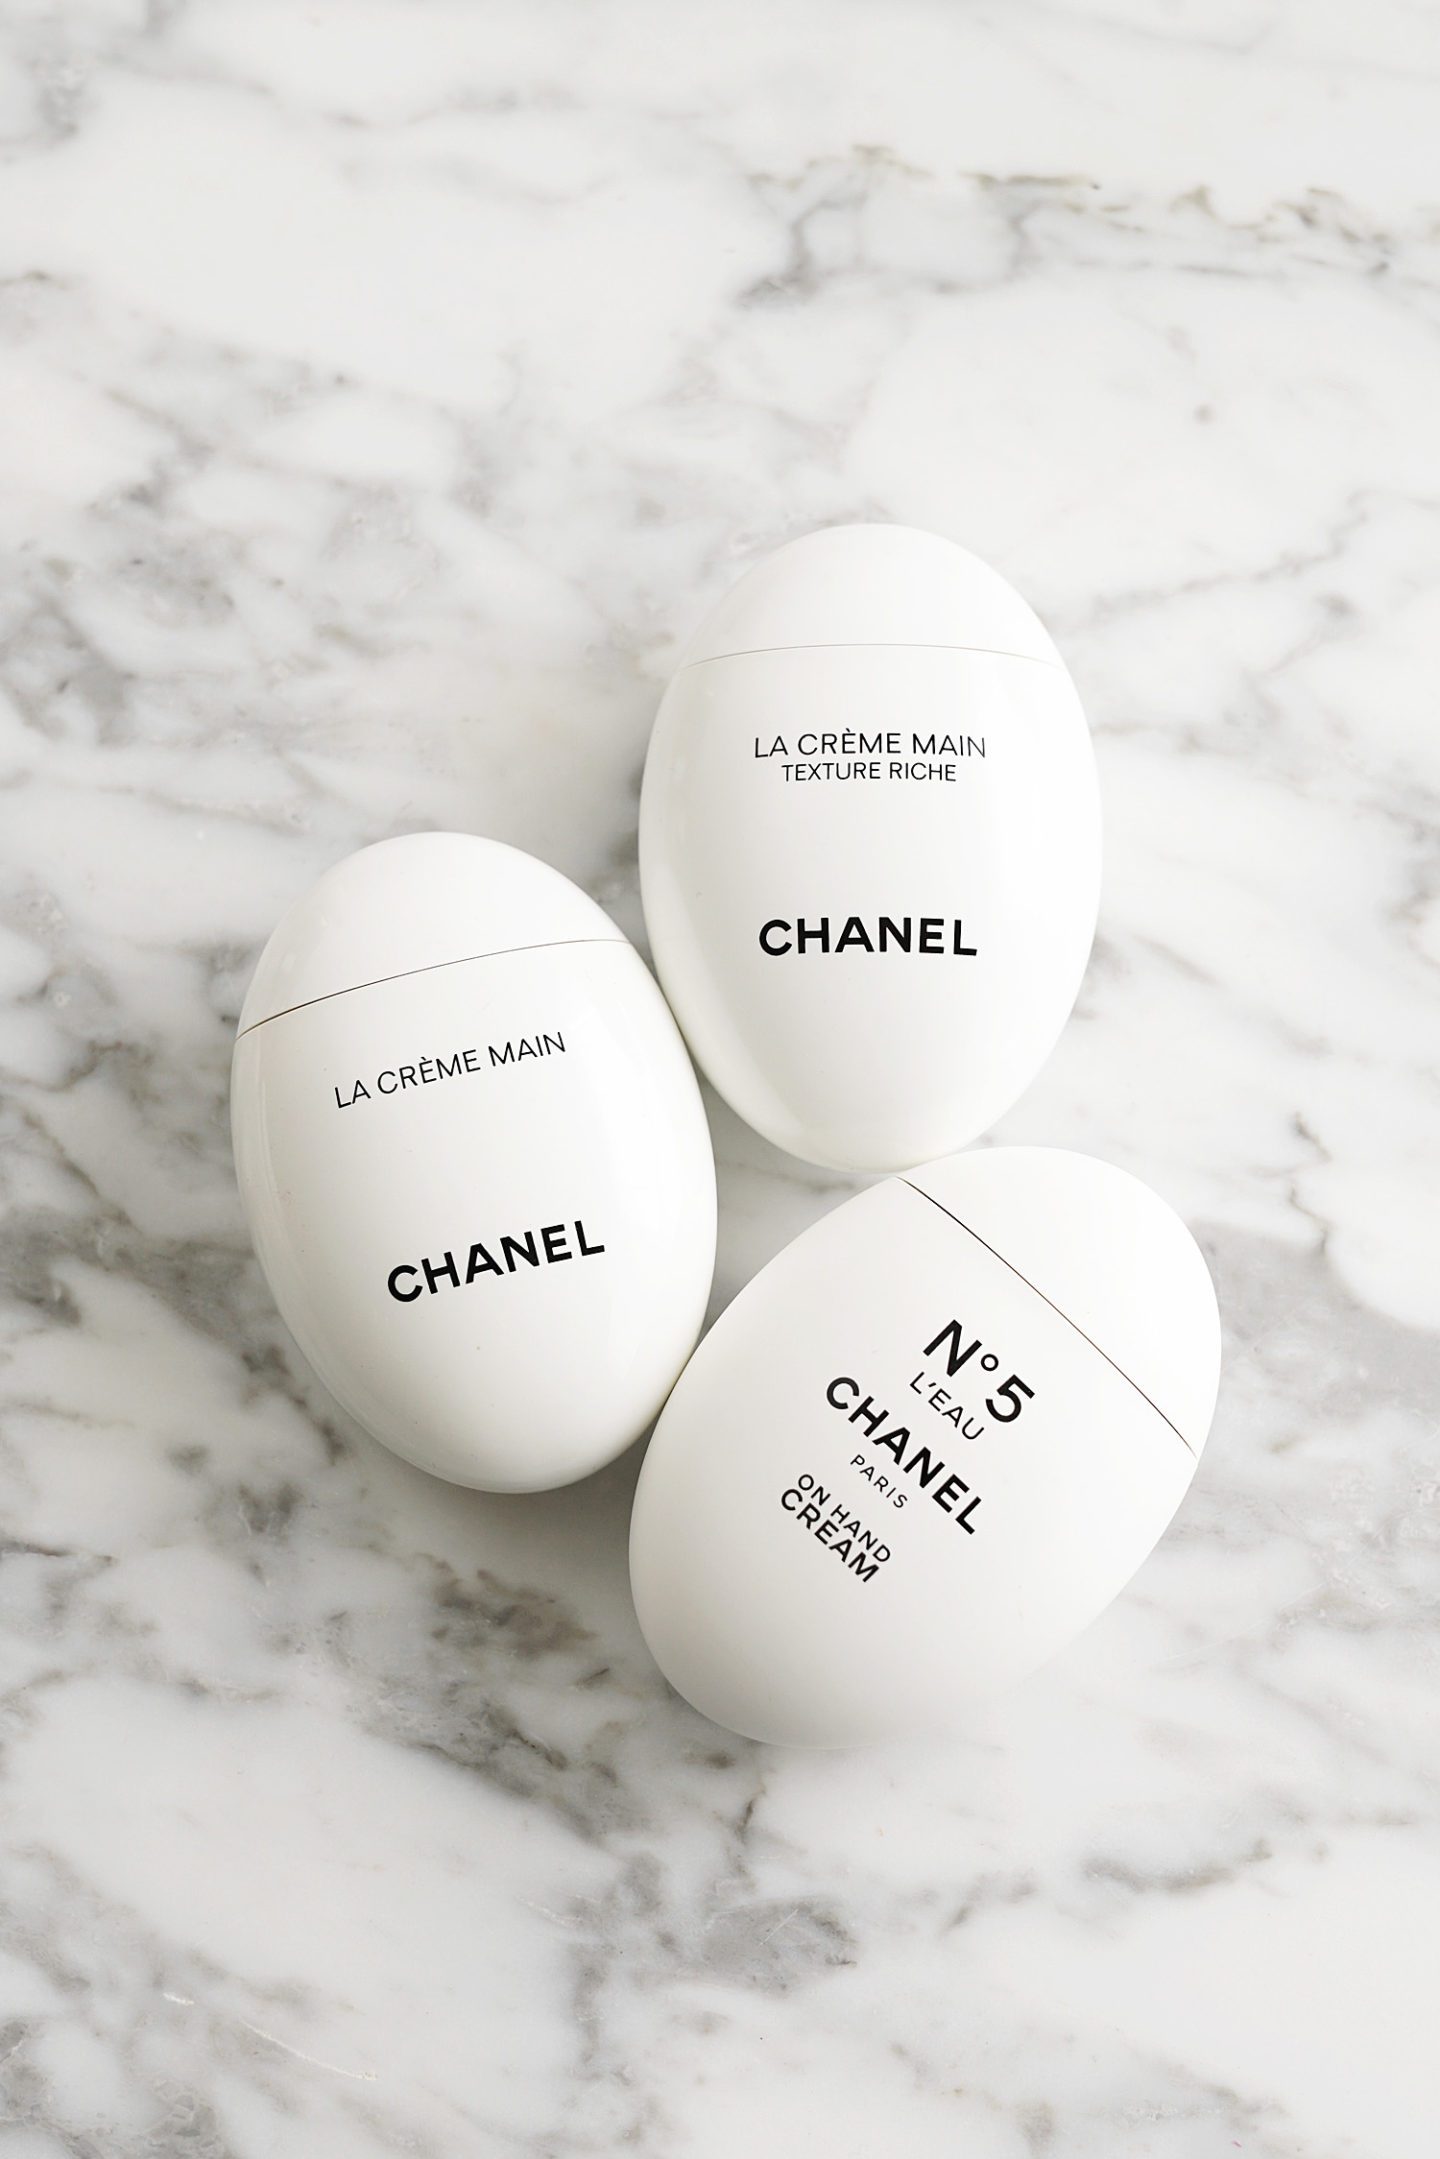 Chanel Hand Cream Review, La Creme Main, No 5 Leau On Hand Cream and Texture Riche